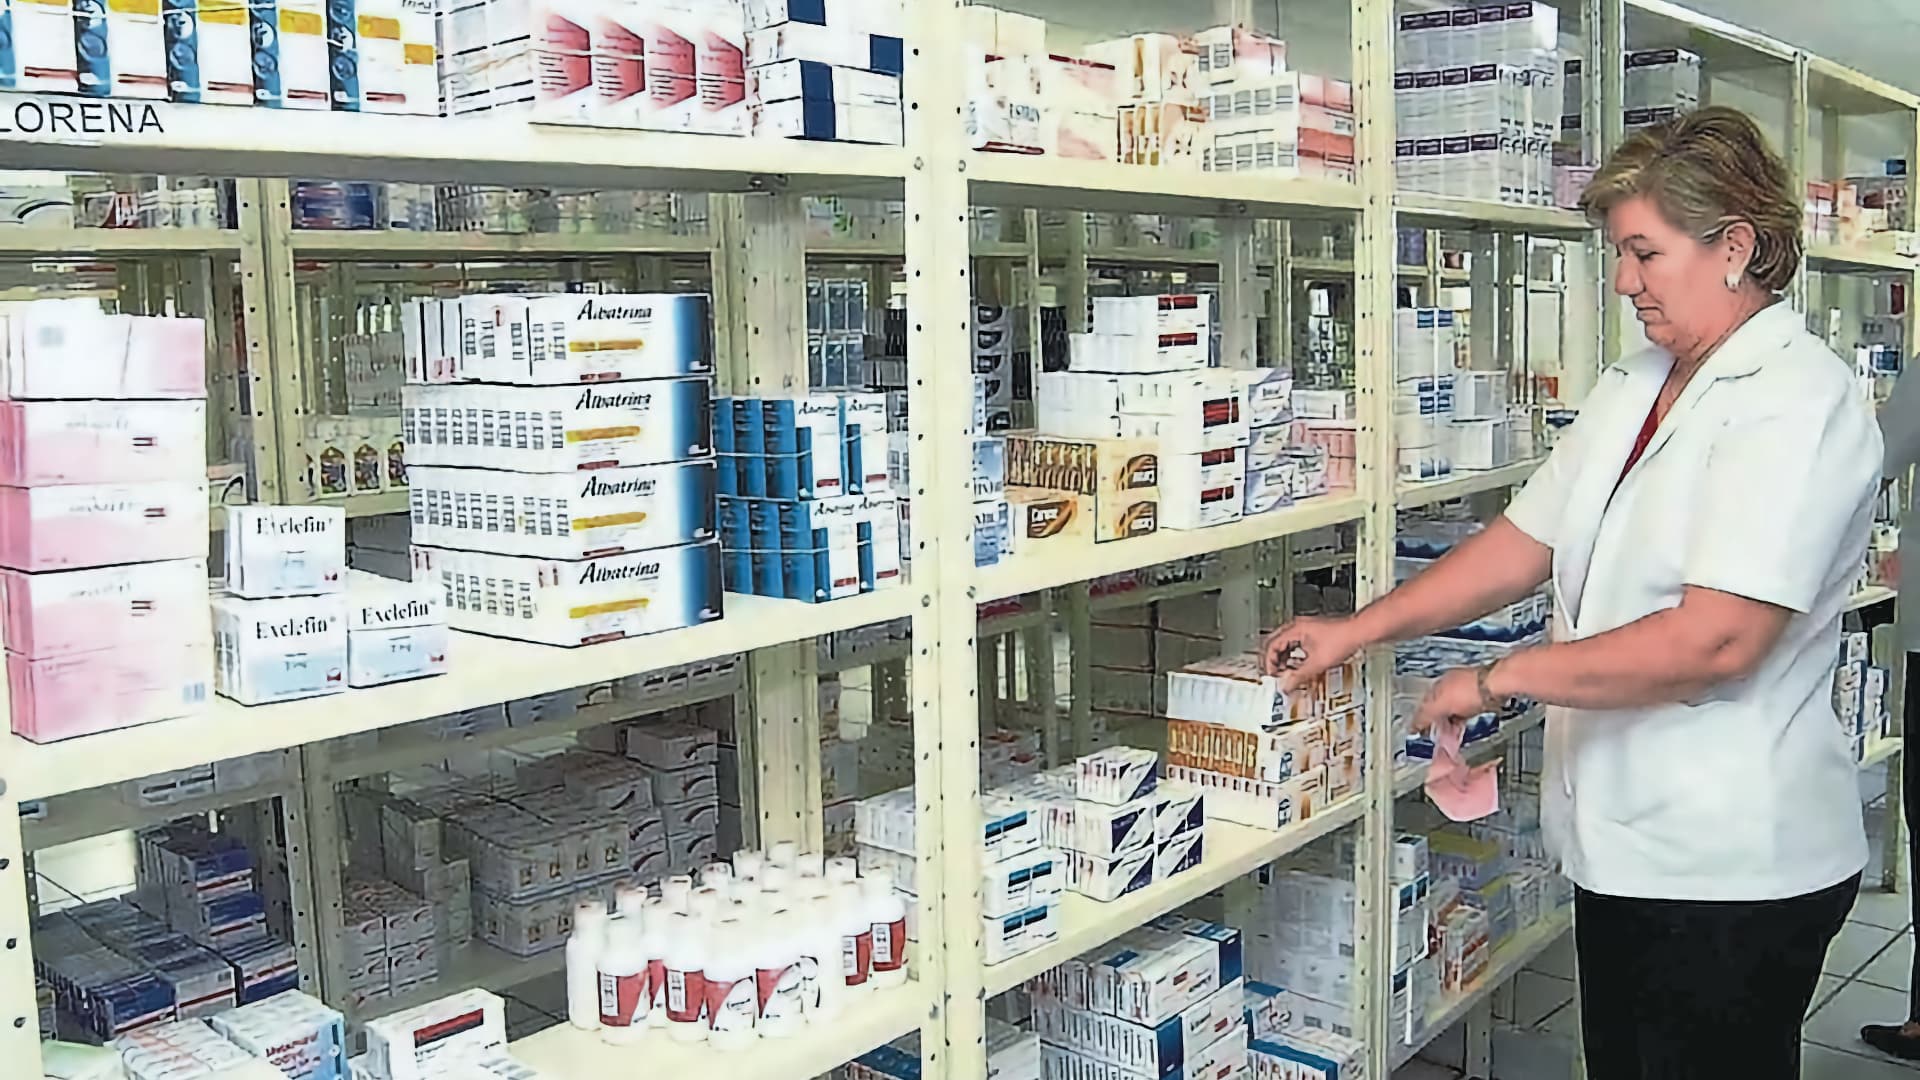 Covid-19 incrementa ventas de medicinas en tiendas de autoservicio, revela estudio